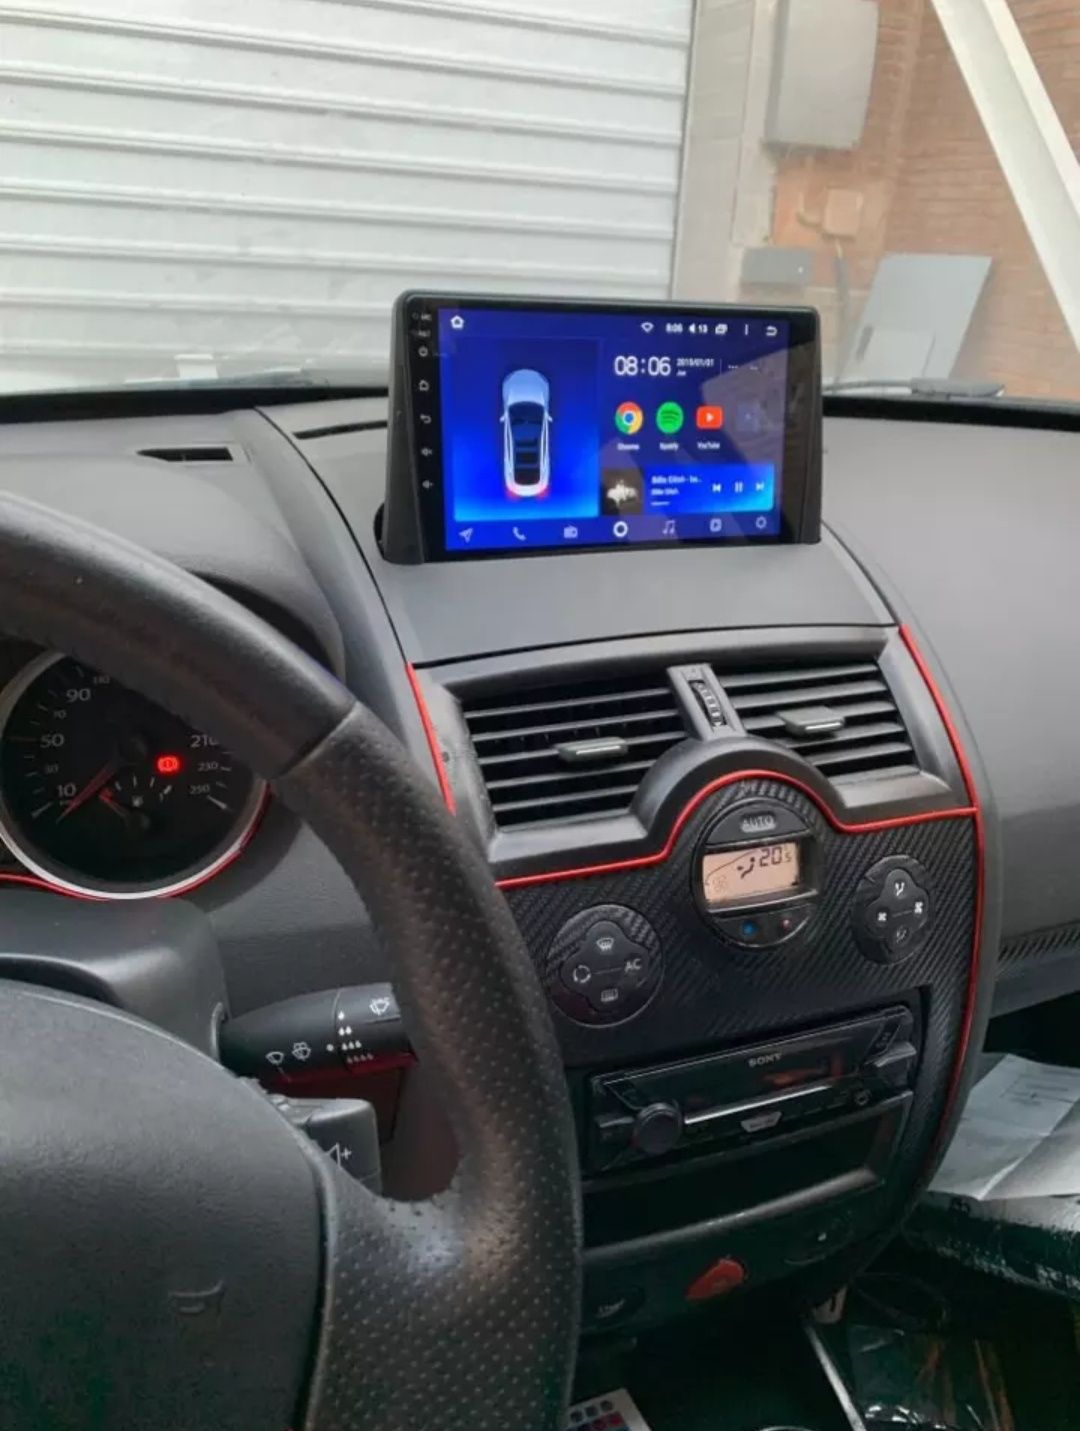 Radio Android 12 com GPS Renault megane 2 (Artigo novo)